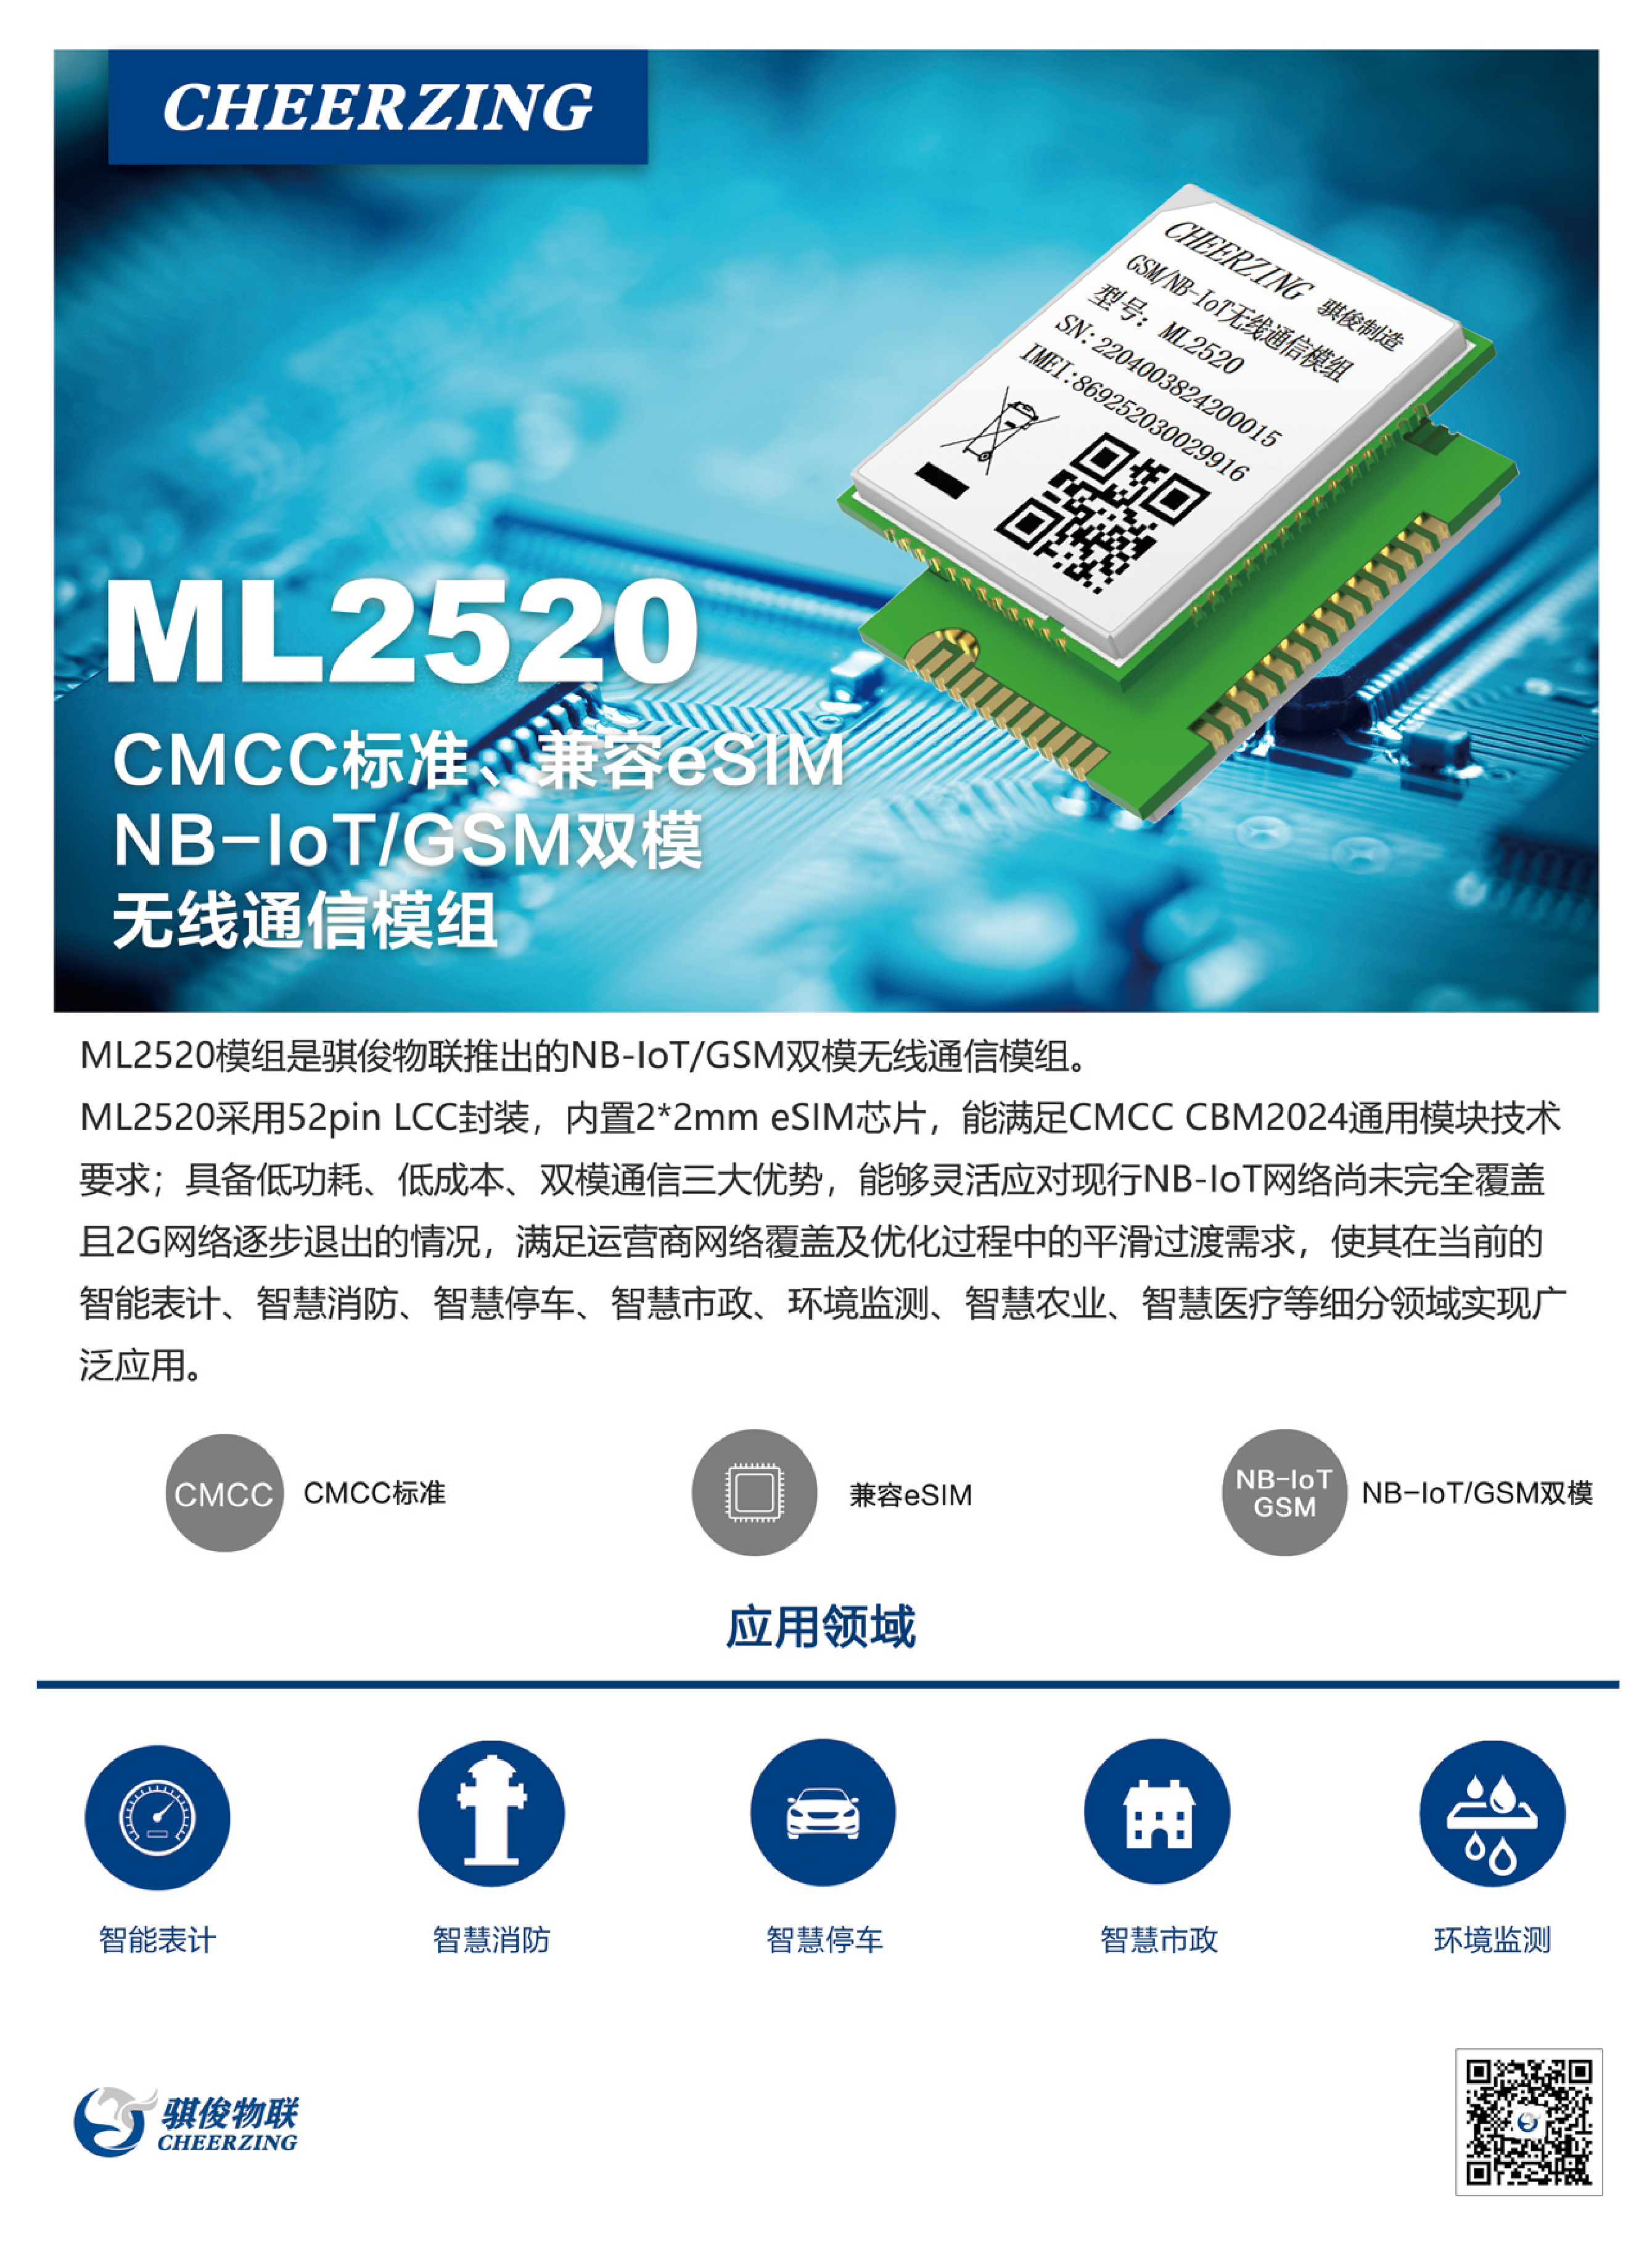 NB-IoT无线通信模组-ML2520图片